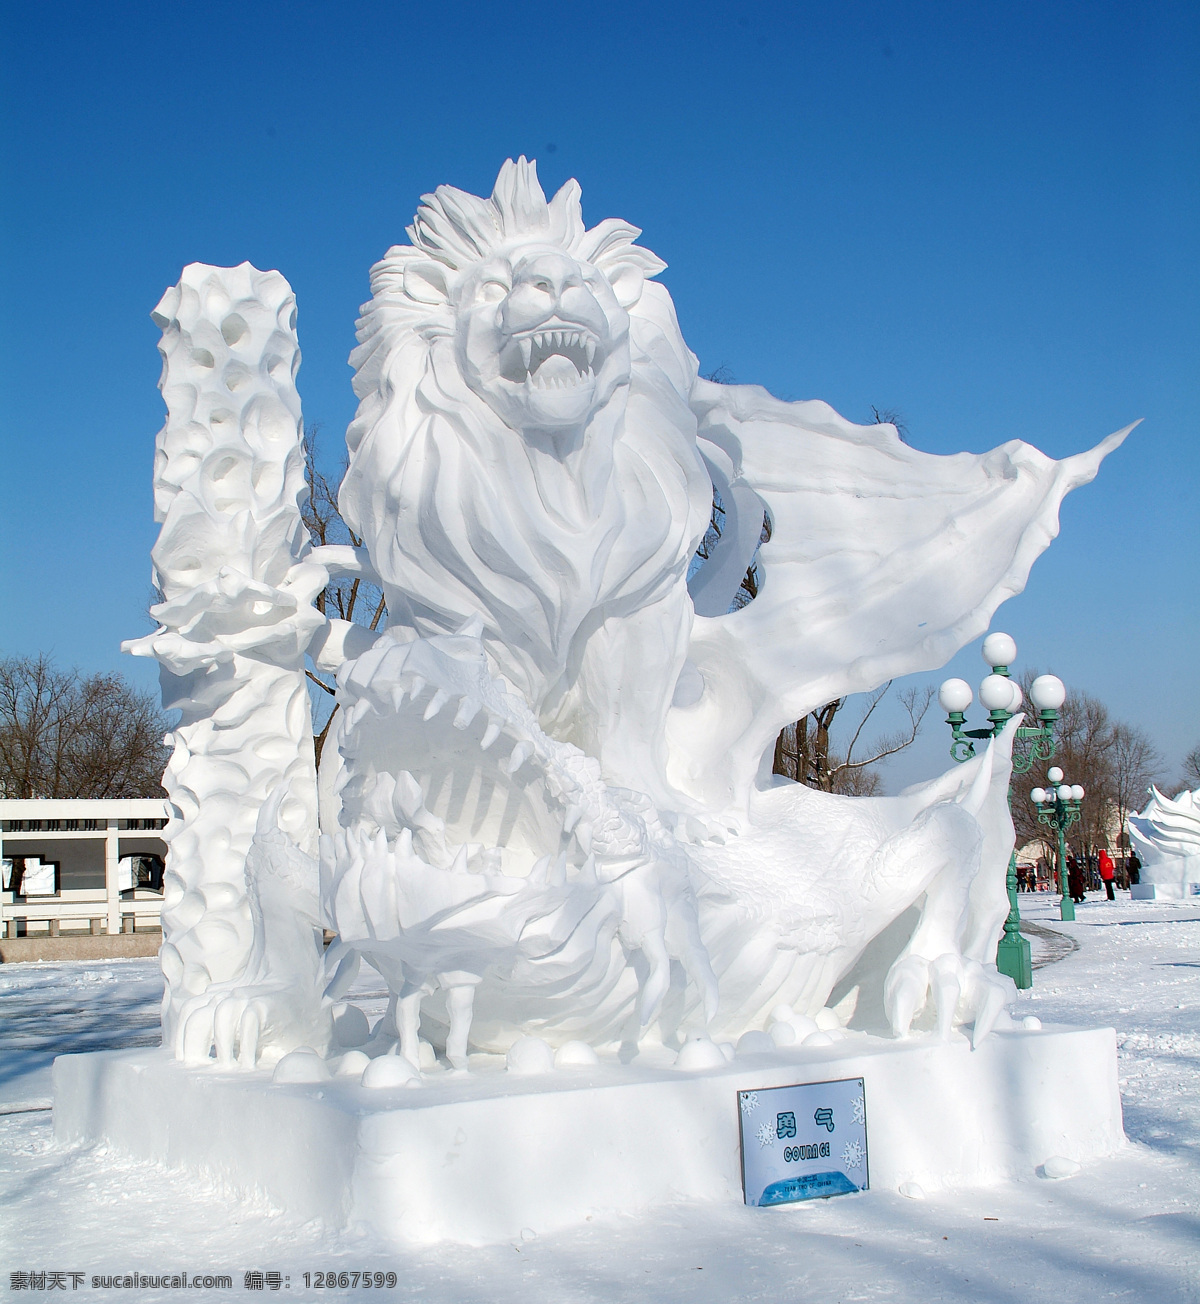 雪雕狮子 冰雪节 雪雕 冰雕 文化艺术